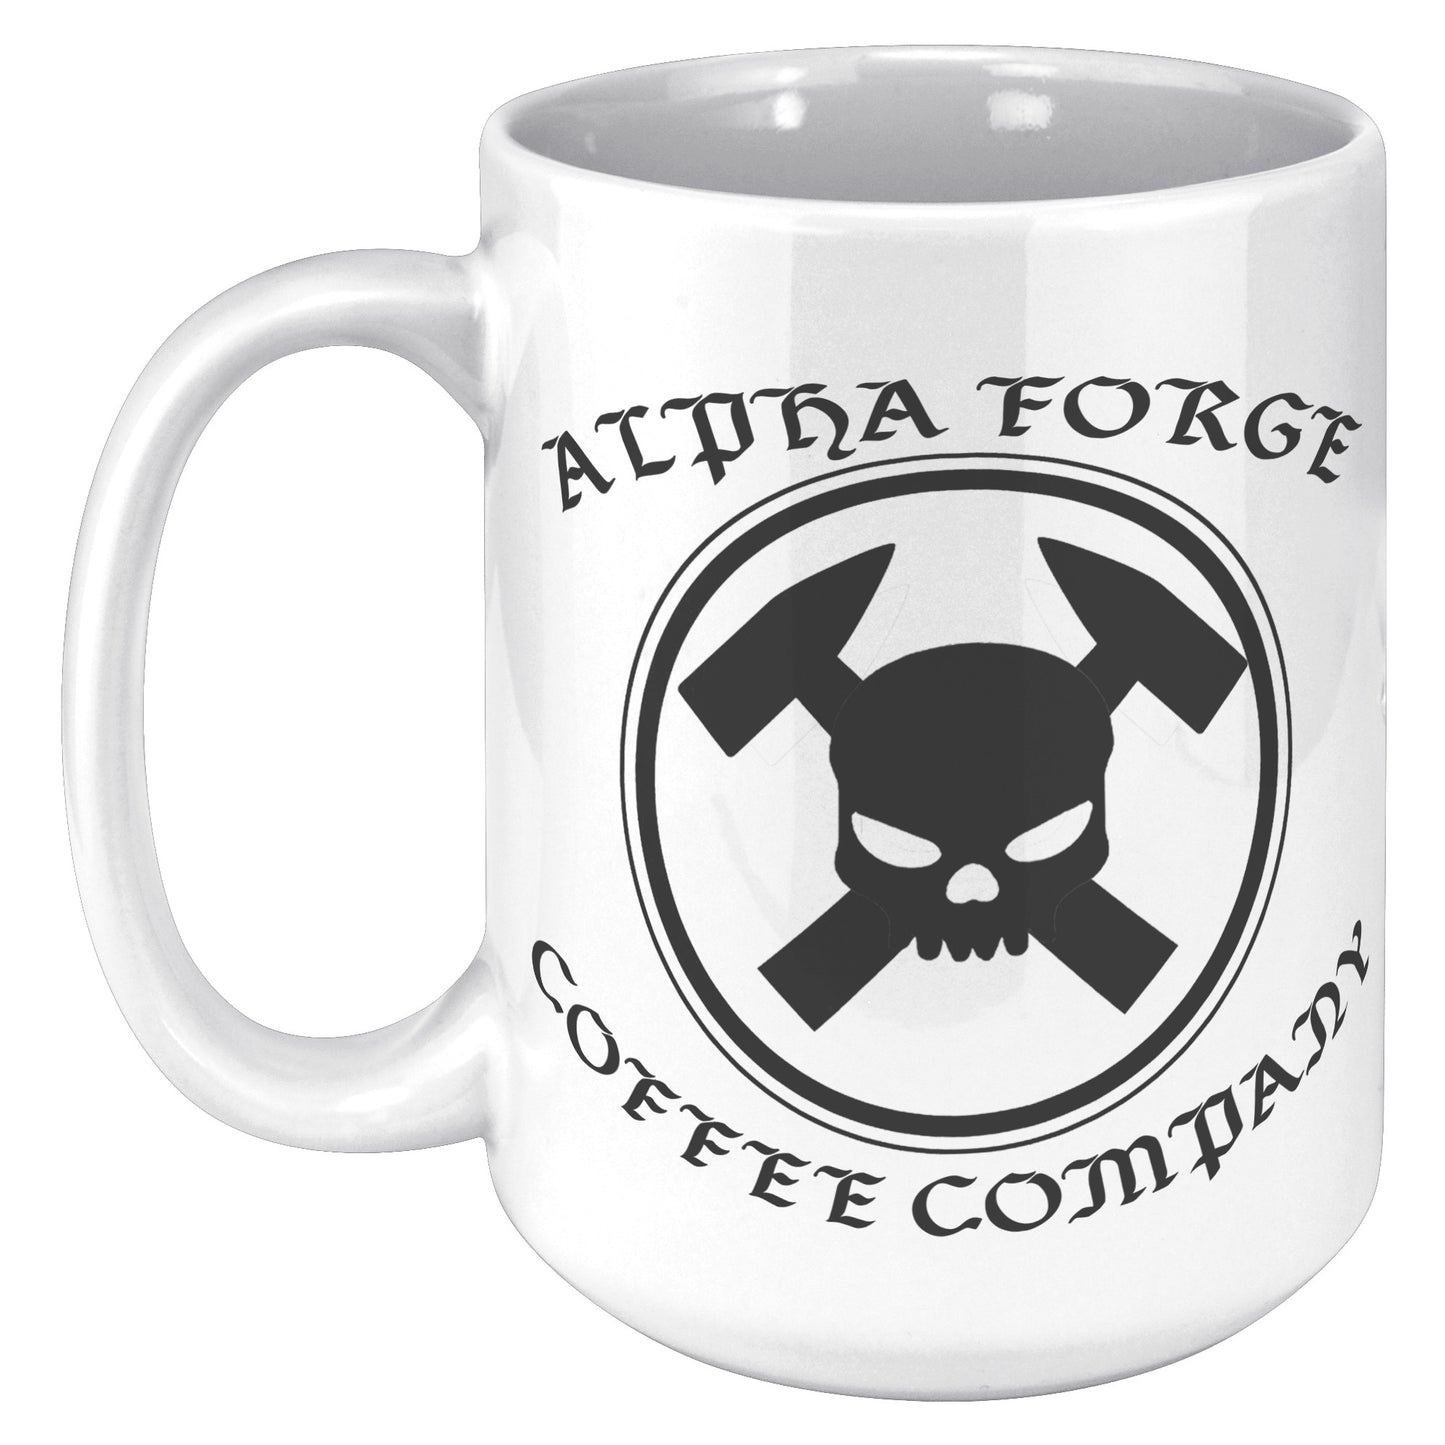 Alpha Forge Coffee Co. 15oz Mug